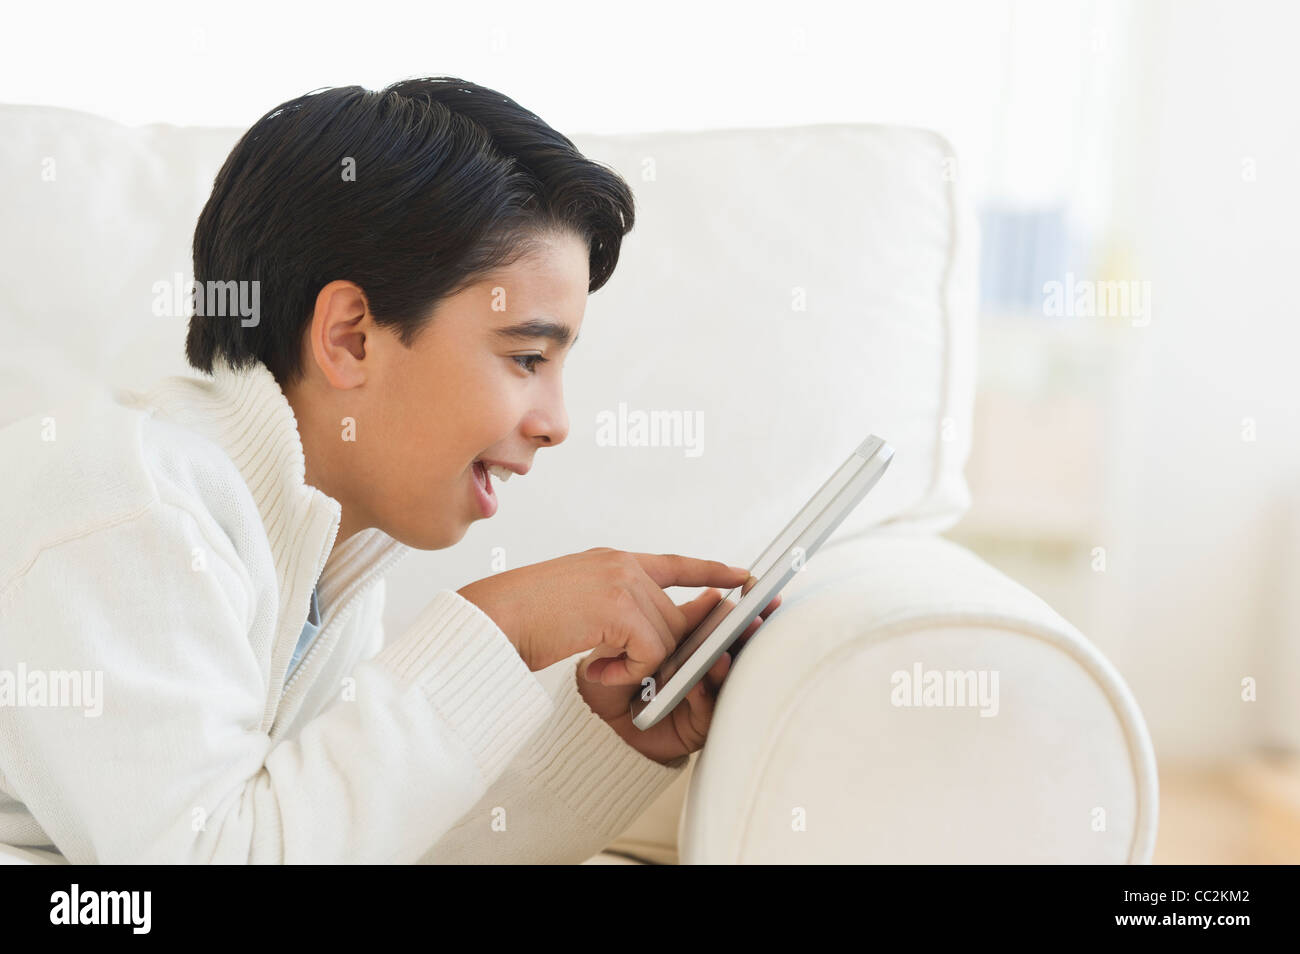 Stati Uniti d'America, New Jersey, Jersey City, ragazzo (12-13) utilizzando la tavoletta digitale sul divano Foto Stock